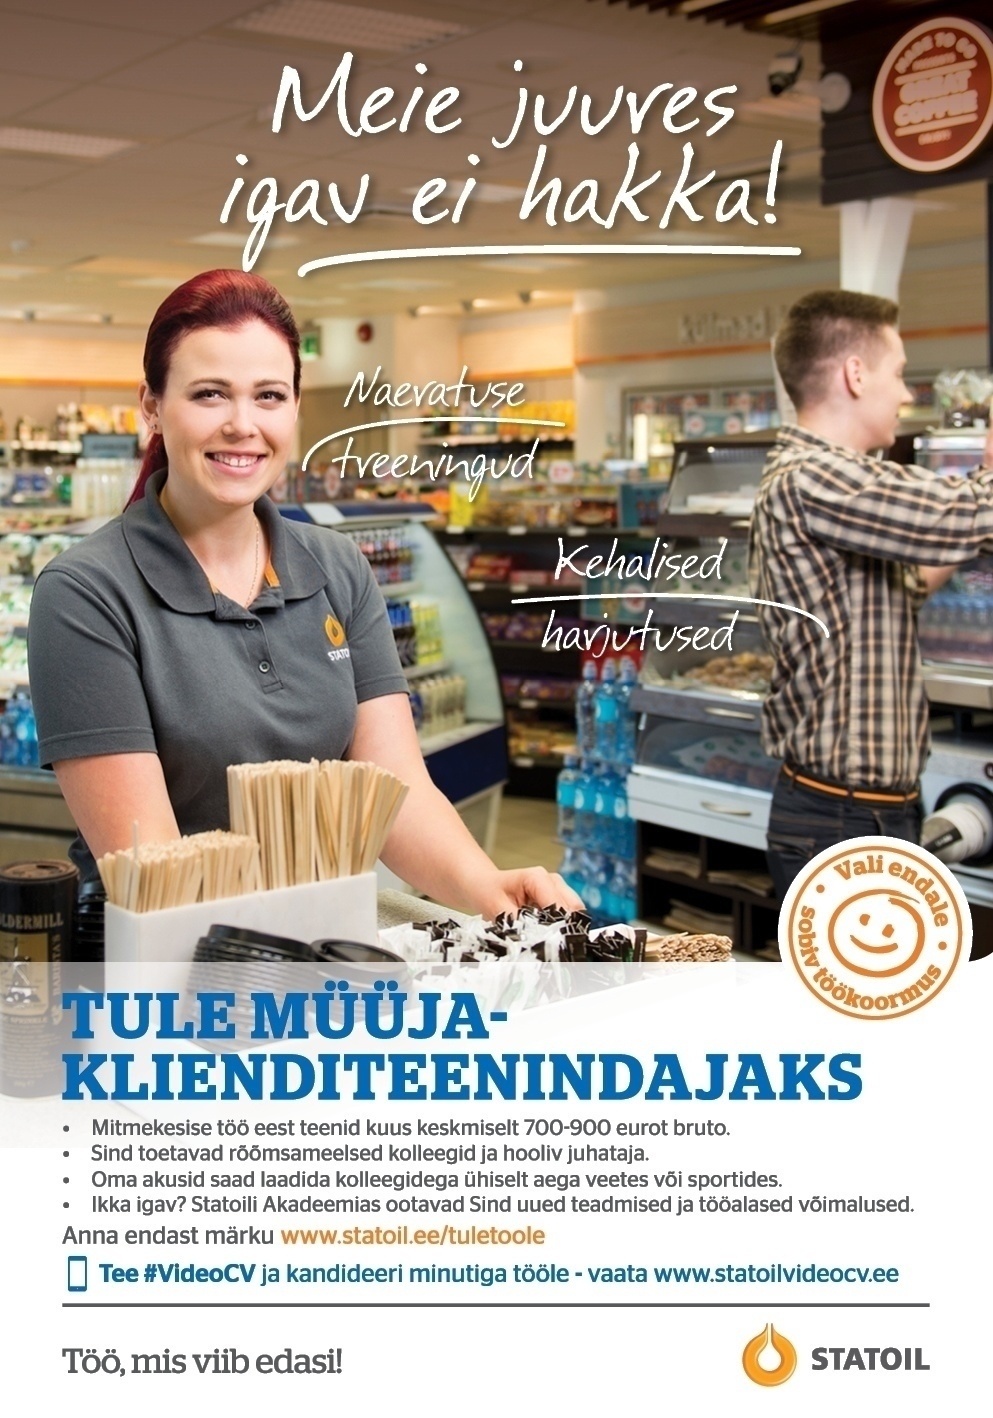 Circle K Eesti AS Müüja-klienditeenindaja Viljandi teenindusjaamadesse